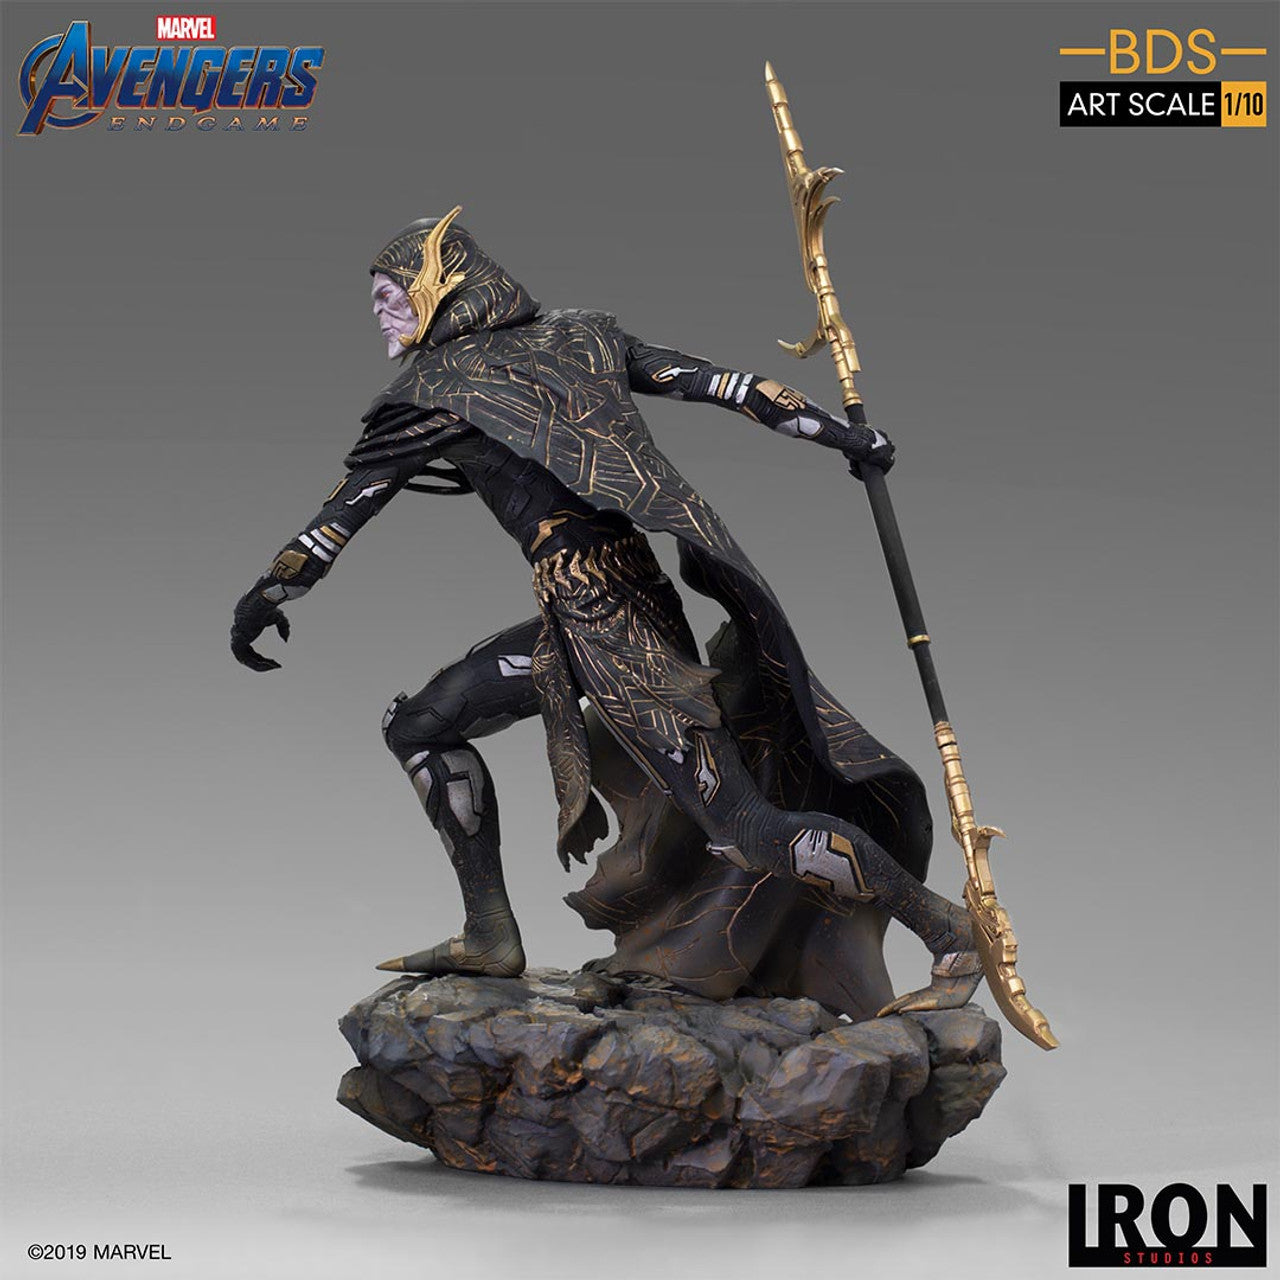 Pedido Estatua Corvus Glaive - Avengers: Endgame - Battle Diorama Series (BDS) - marca Iron Studios escala de arte 1/10